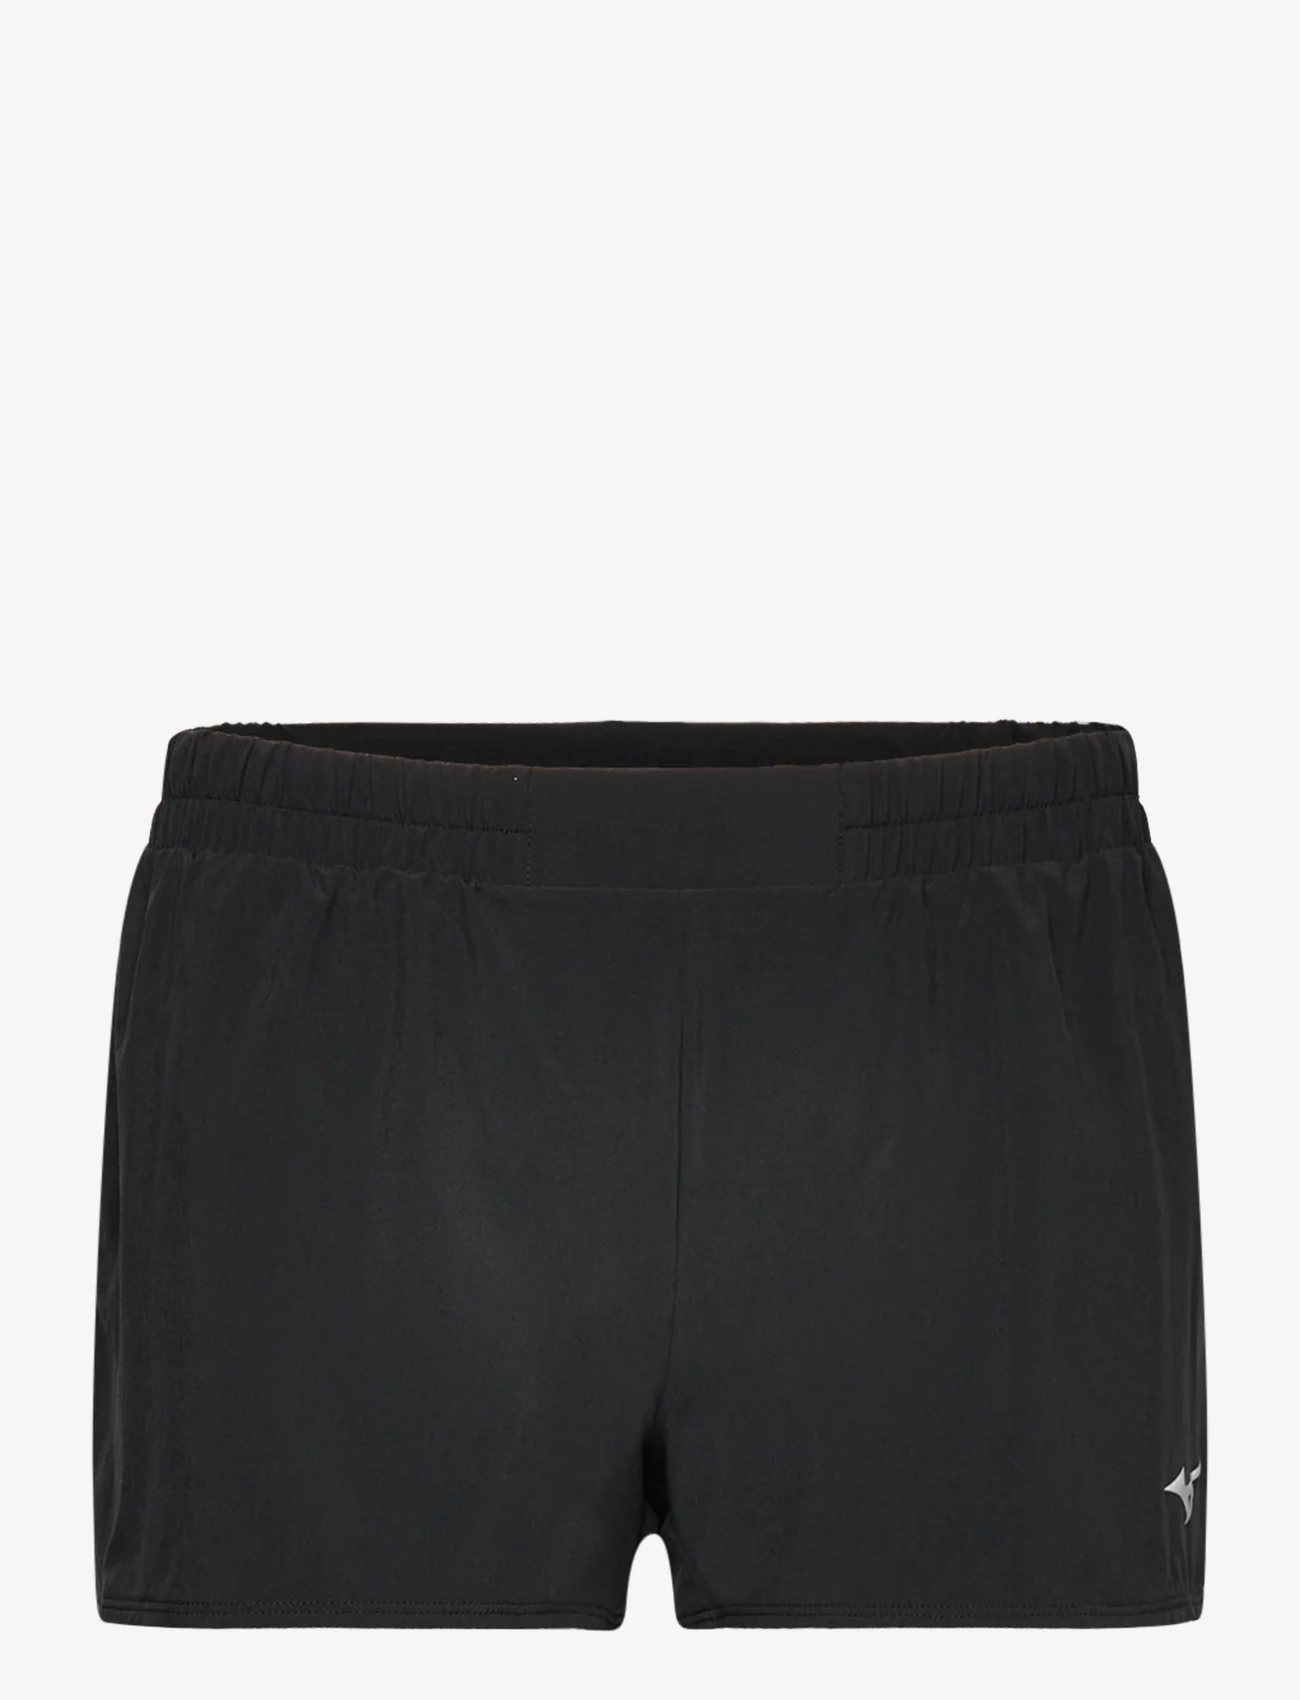 Mizuno - Aero 2.5  Short(W) - sports shorts - black - 0